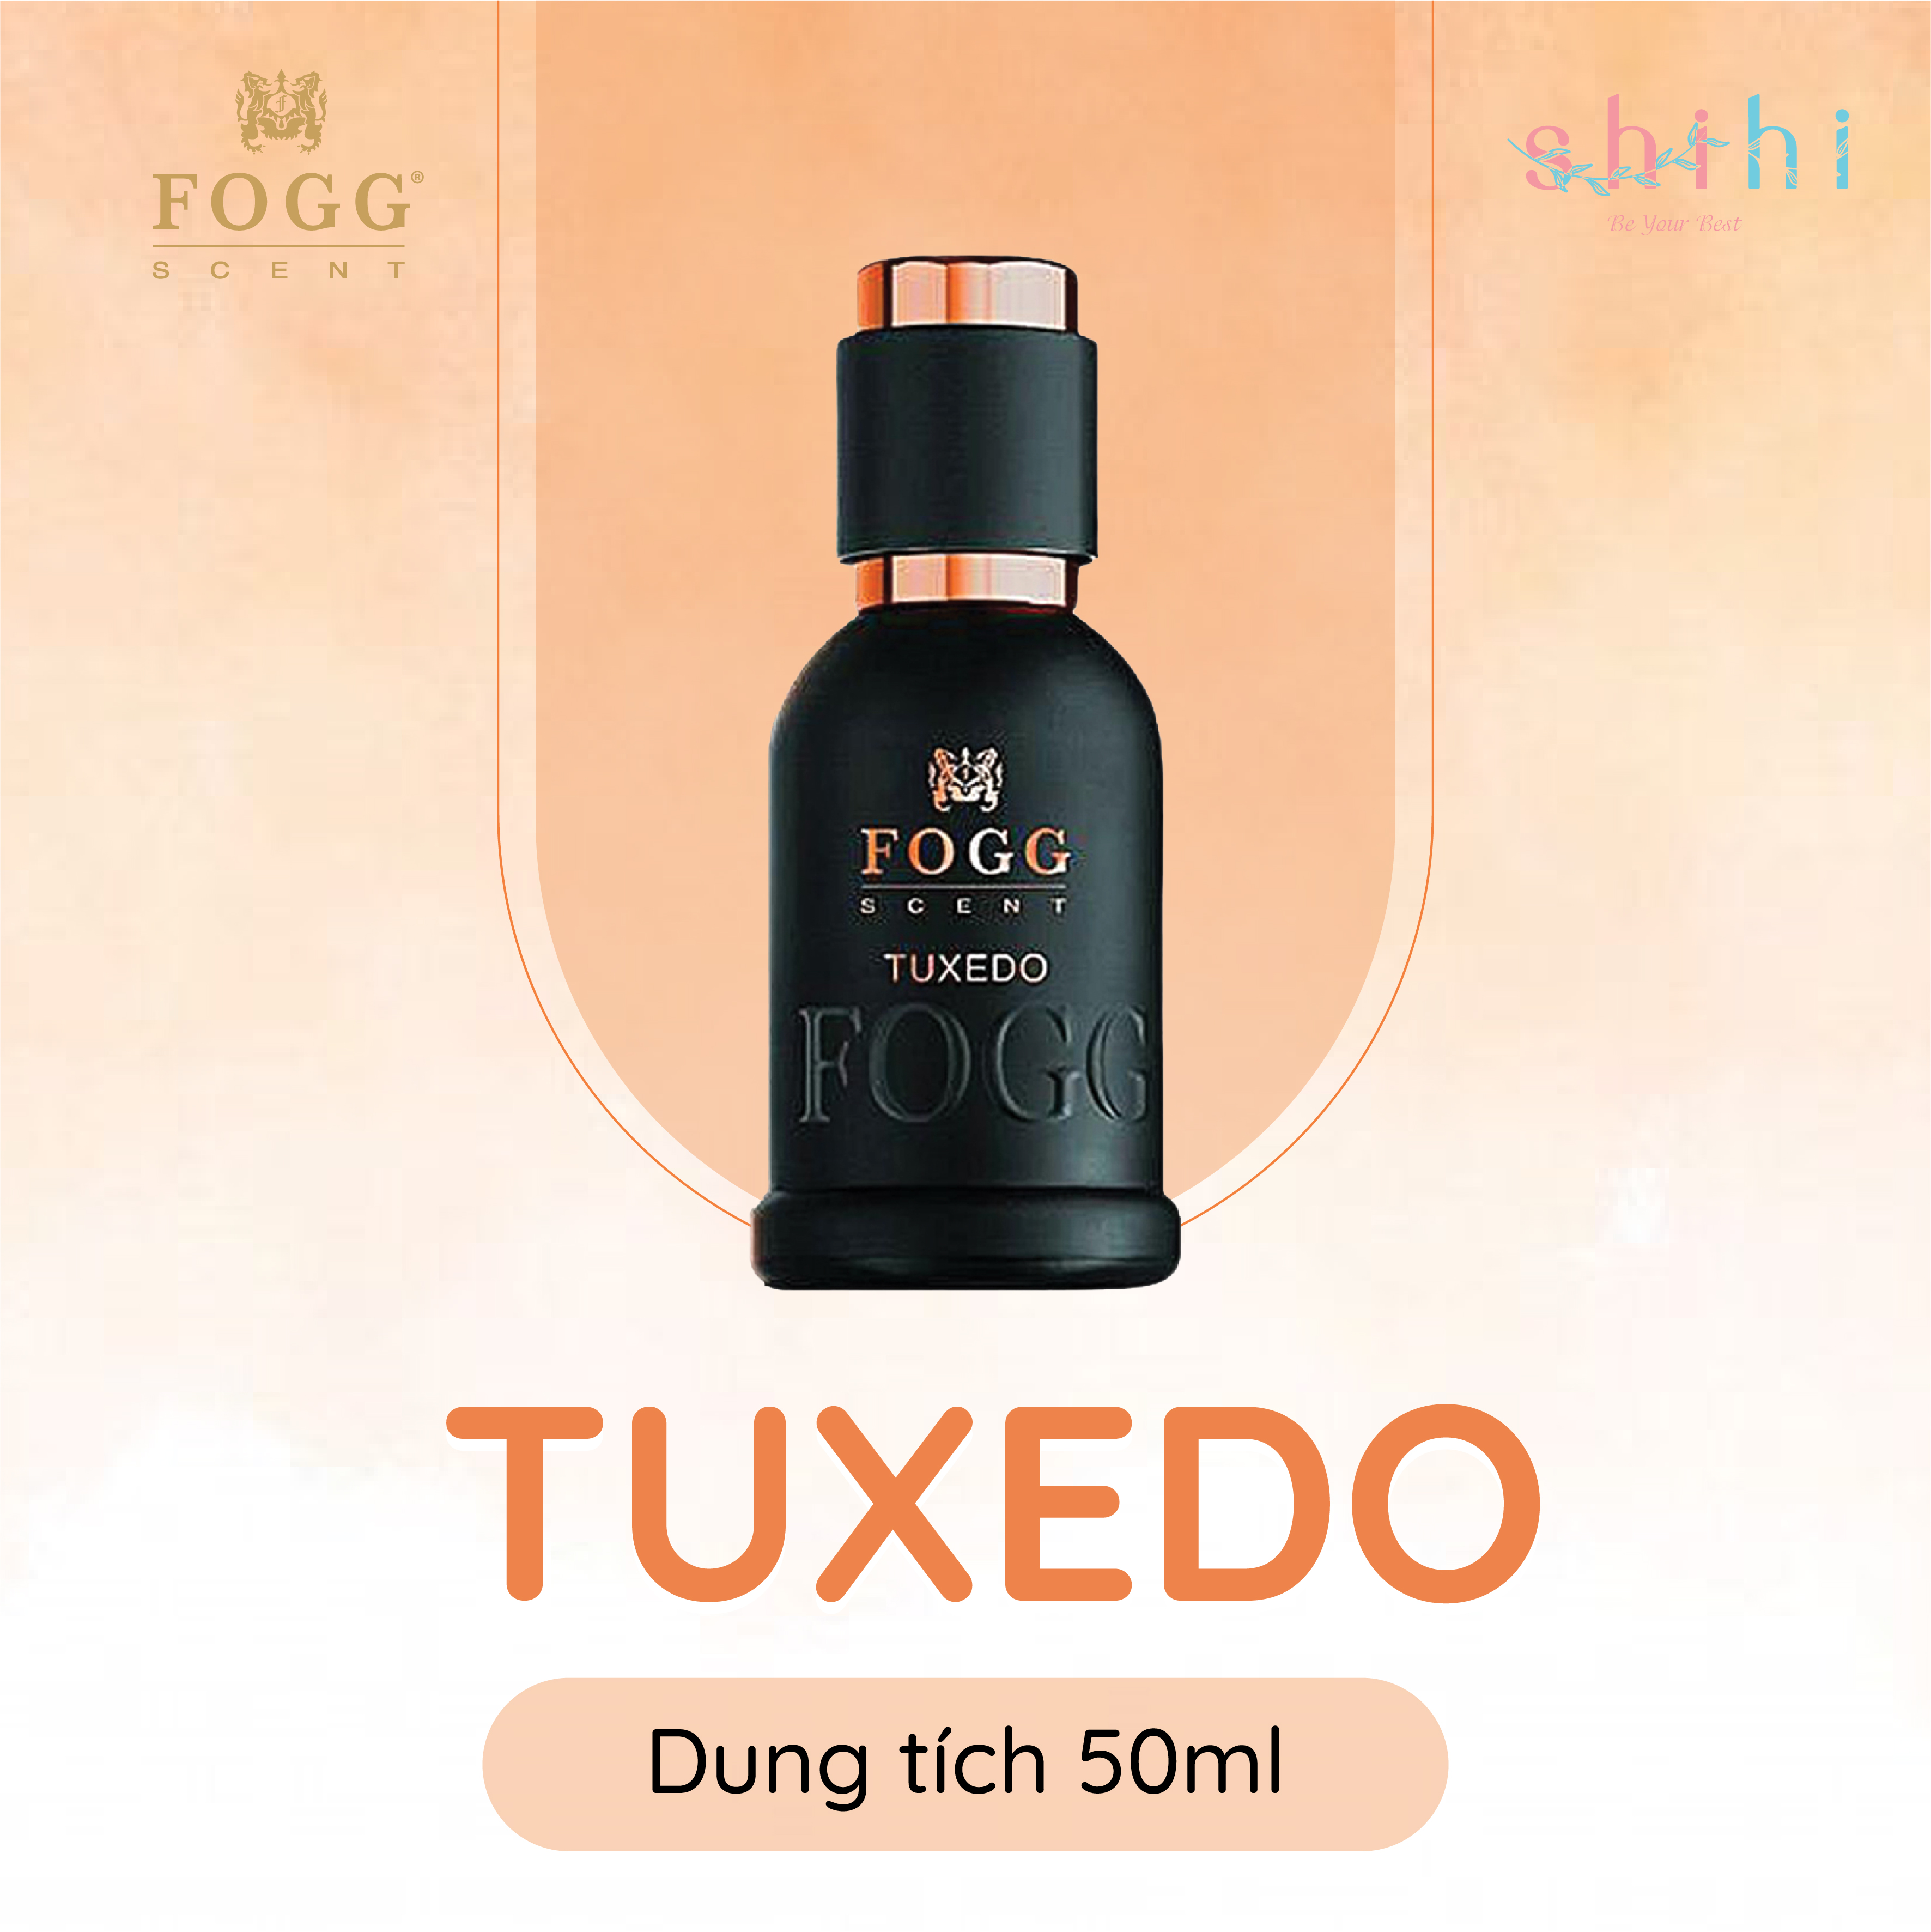 Nước hoa unisex FOGG Tuxedo 50ML, hương thơm mạnh mẽ, đầy cuốn hút, nhập khẩu chính hãng Dubai